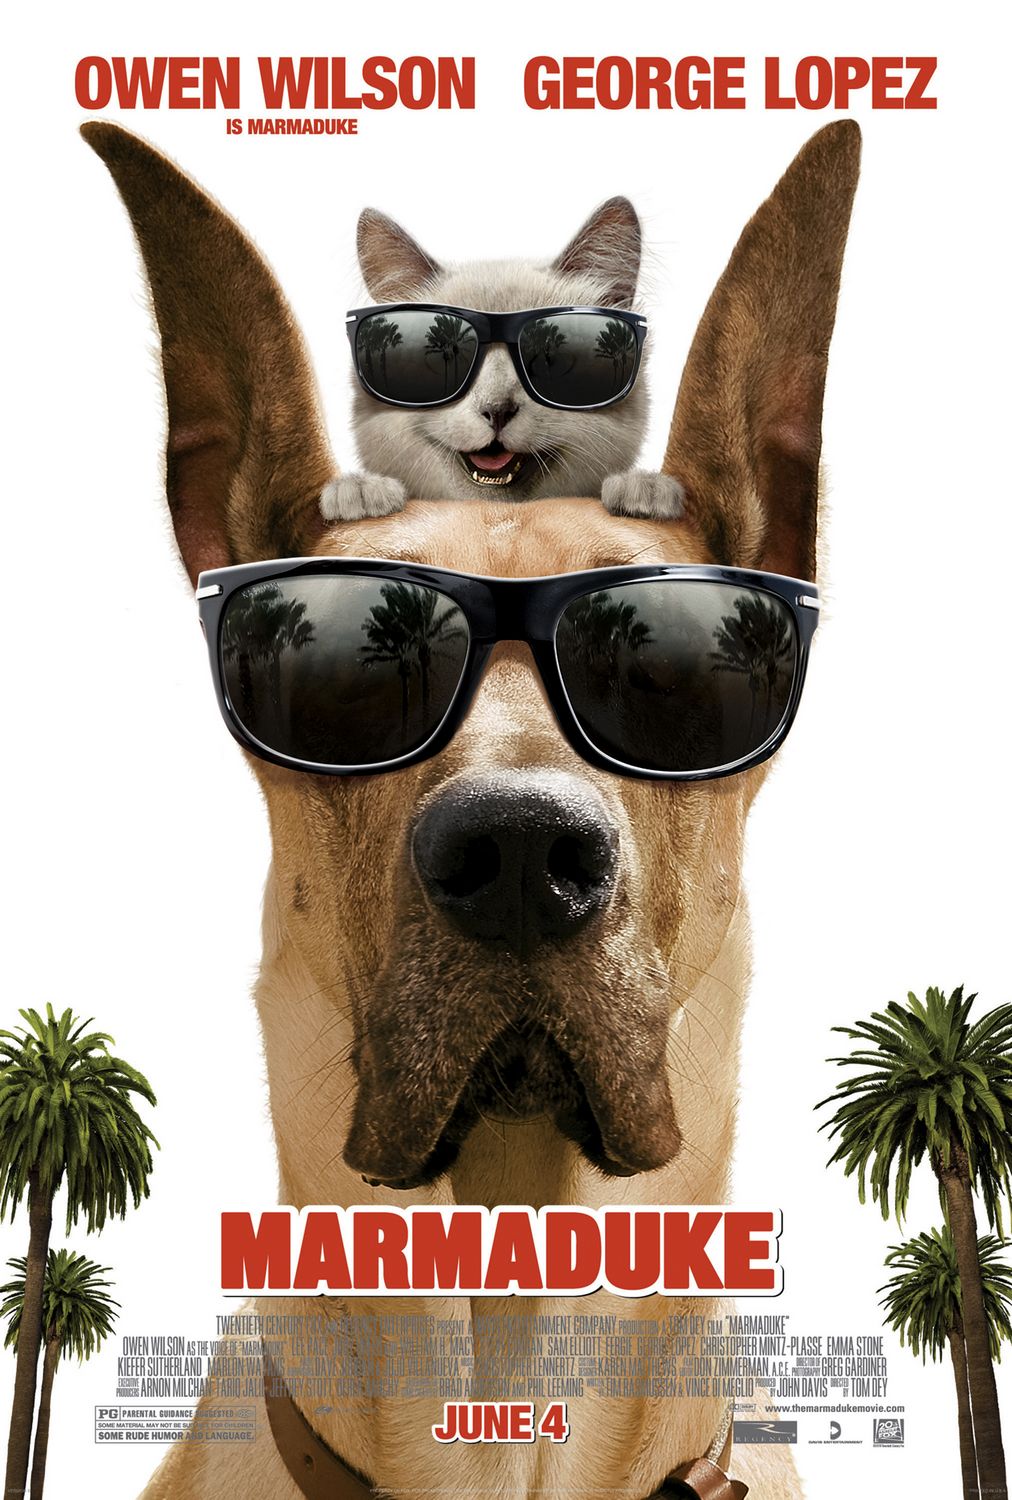 Marmaduke (2010) มาร์มาดุ๊ค สี่ขาฮาคูณสี่ Owen Wilson